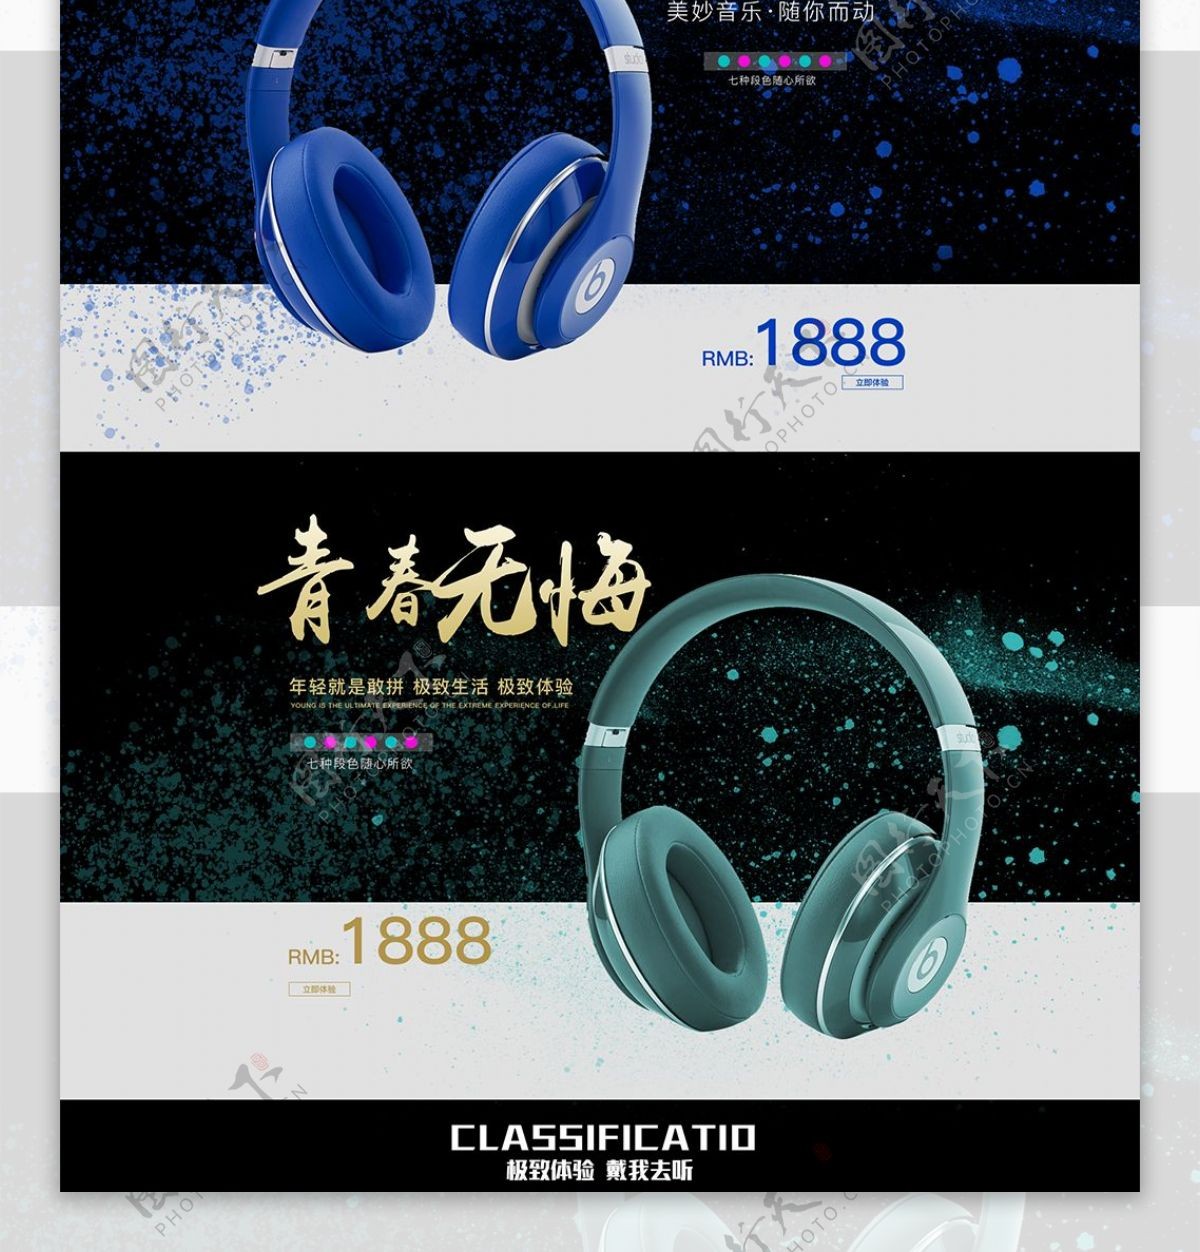 3C数码电器蓝牙耳机活动促销首页模板设计